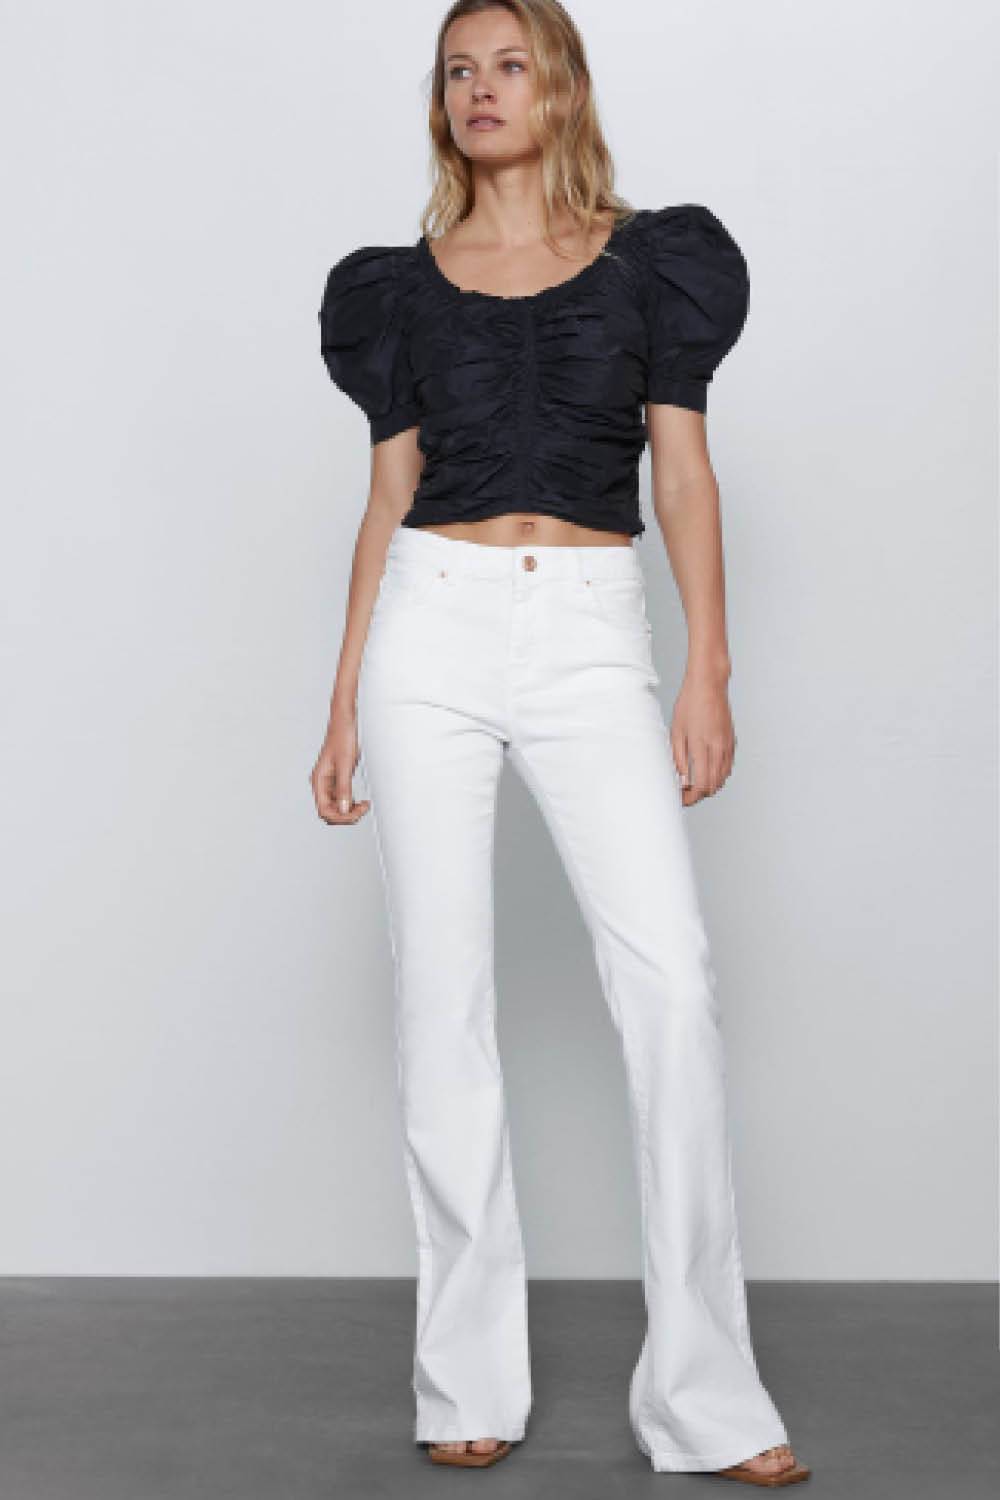 Fondo de armario de verano jeans blancos